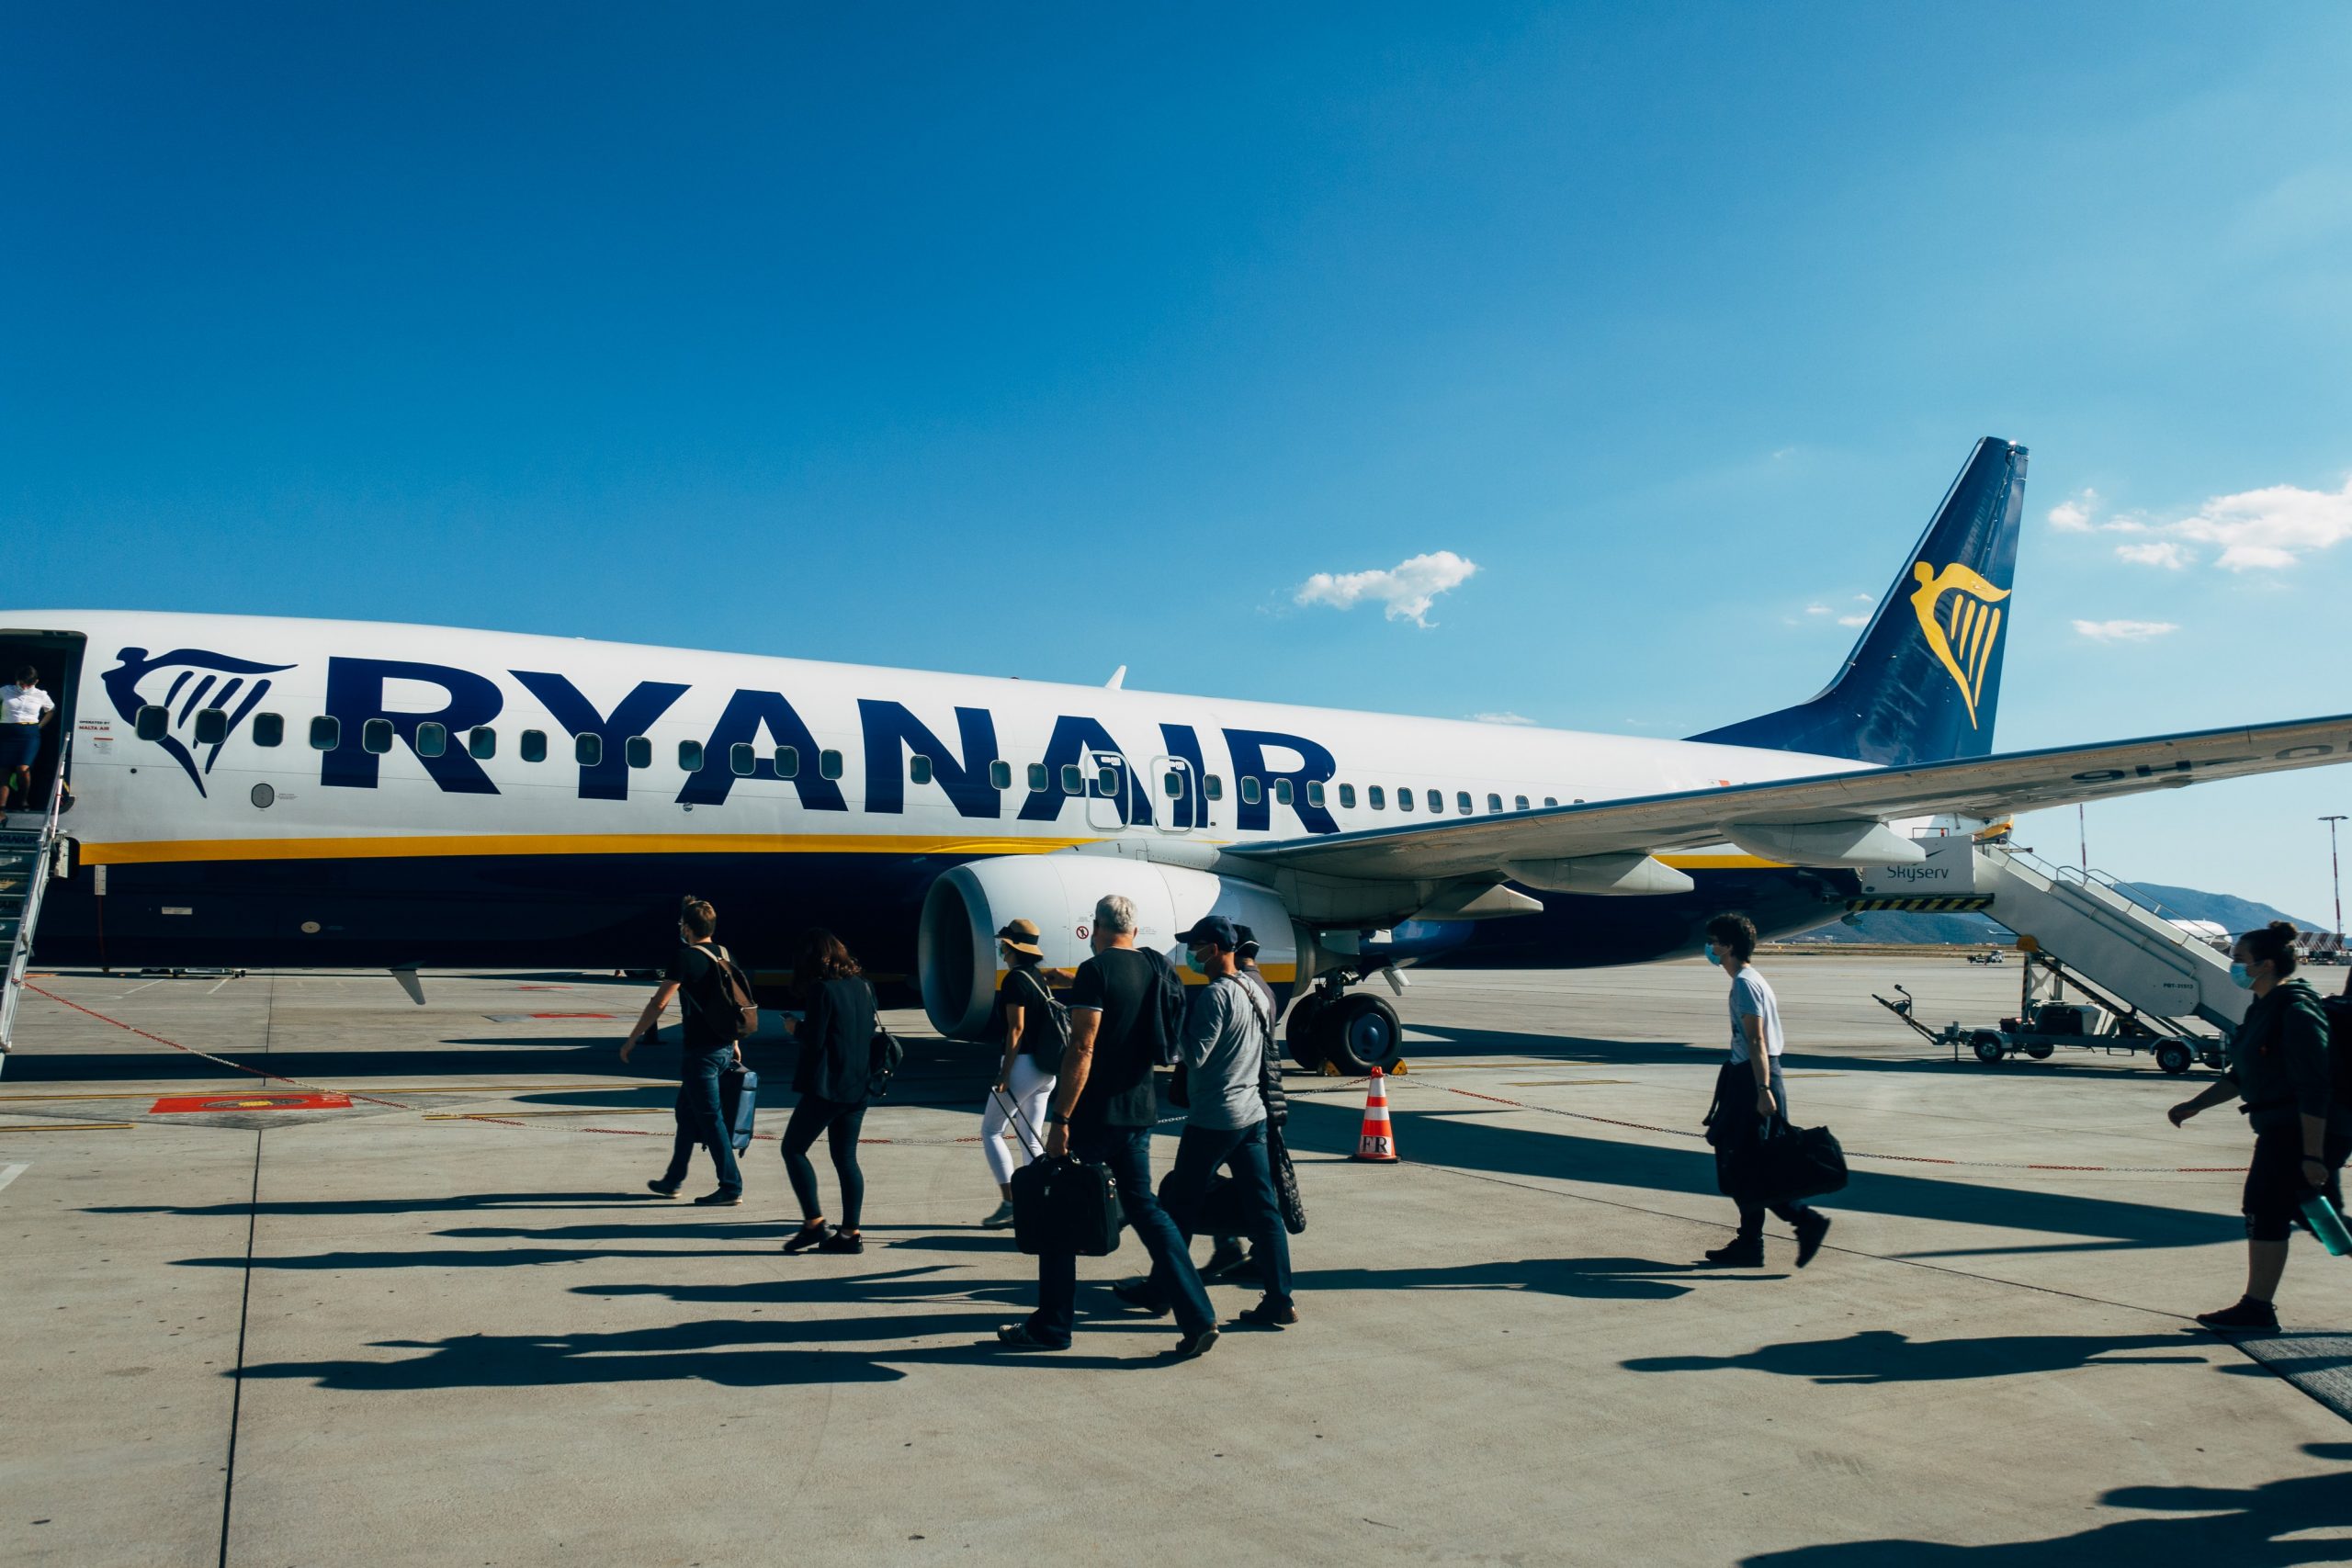 Tikai šodien! Ryanair izpārdošana, lidojumi sākot no €5!